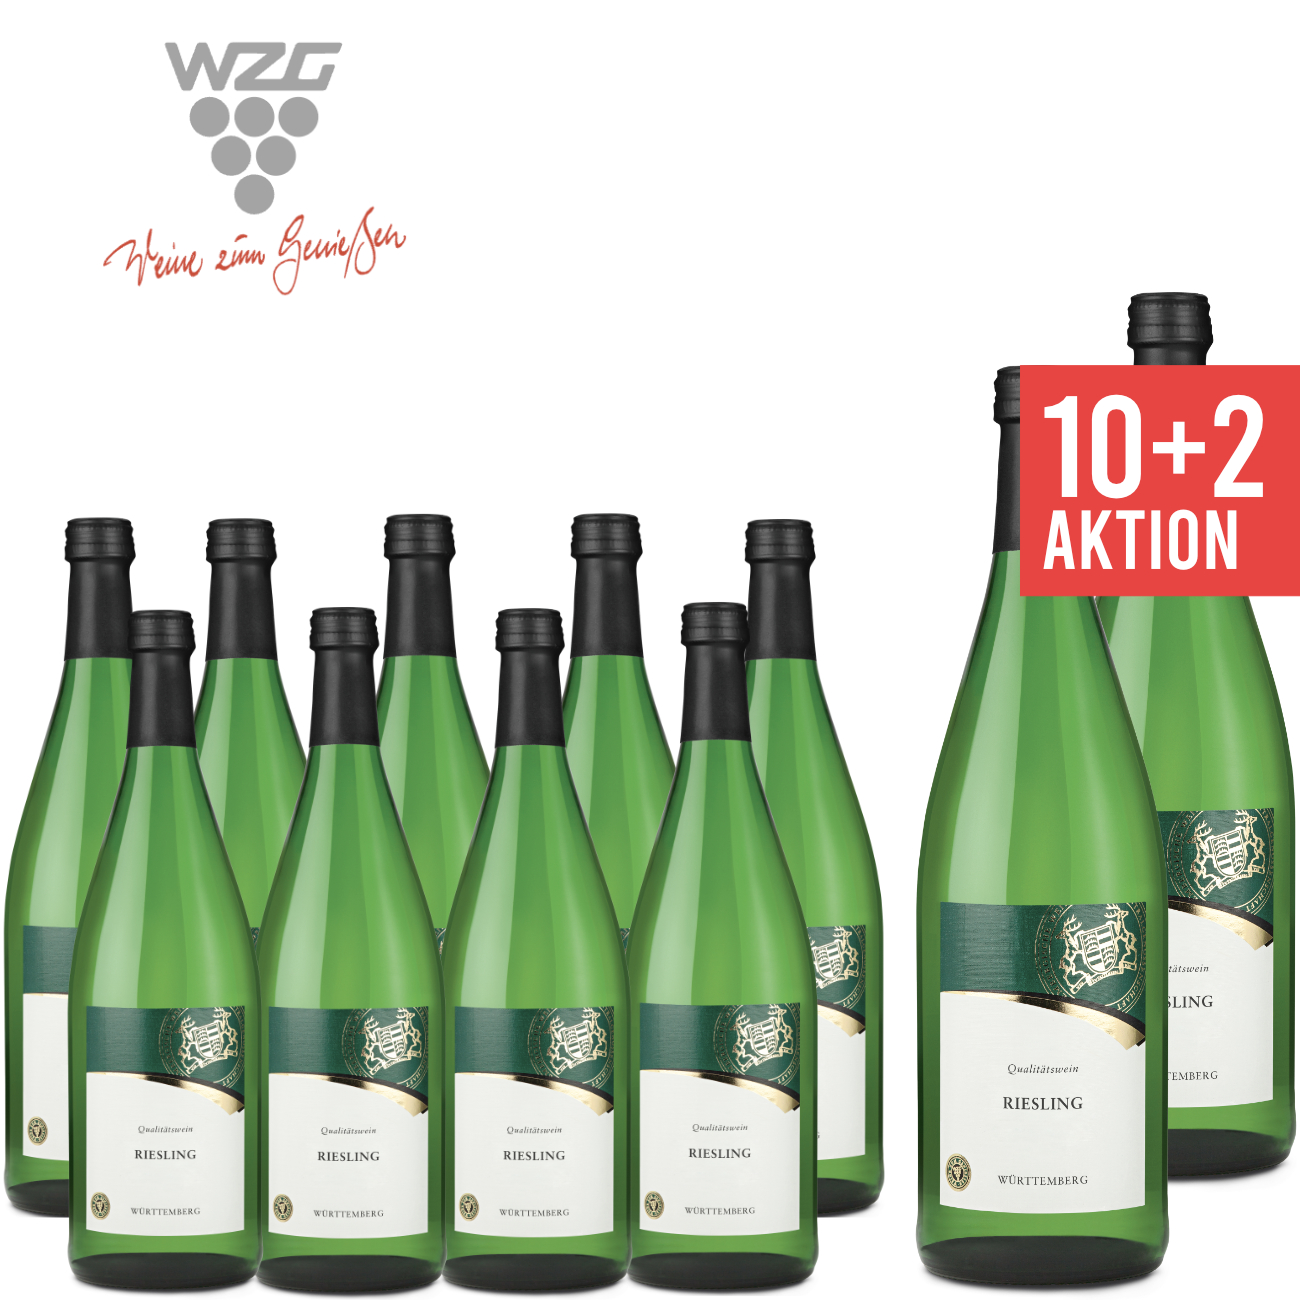 10+2 WZG Möglingen Riesling Qualitästwein Württemberg 1,0 L - Angebot, Paket, Weisswein, fruchtig, günstige Literflasche, 1-Liter, Württemberger Wein